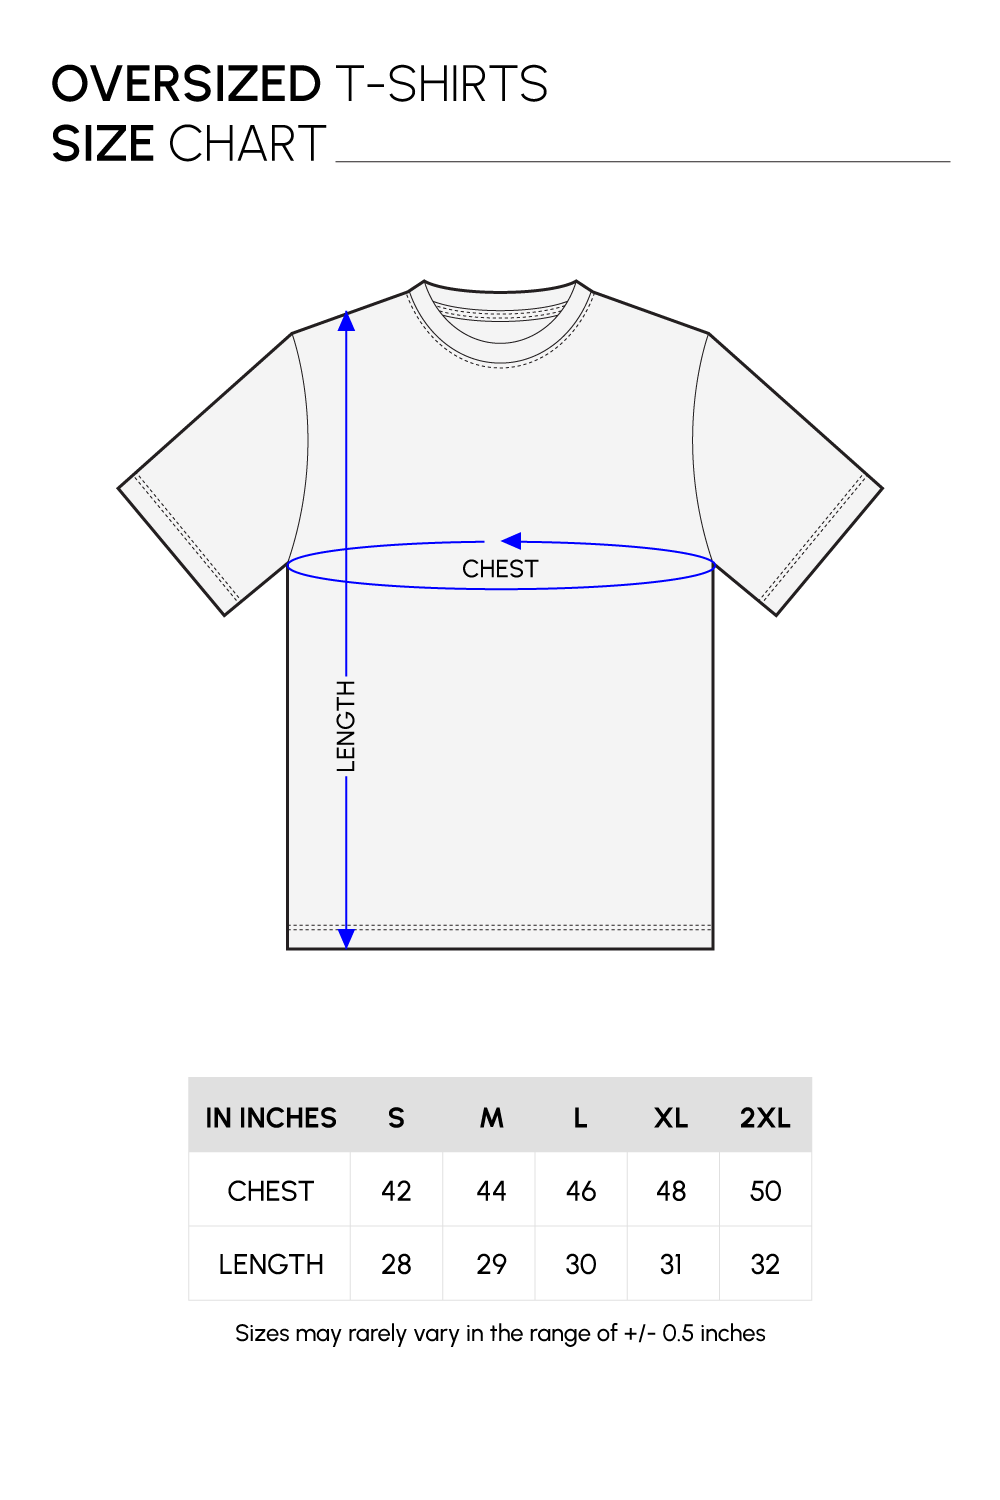 Oversized T-shirt Size Chart